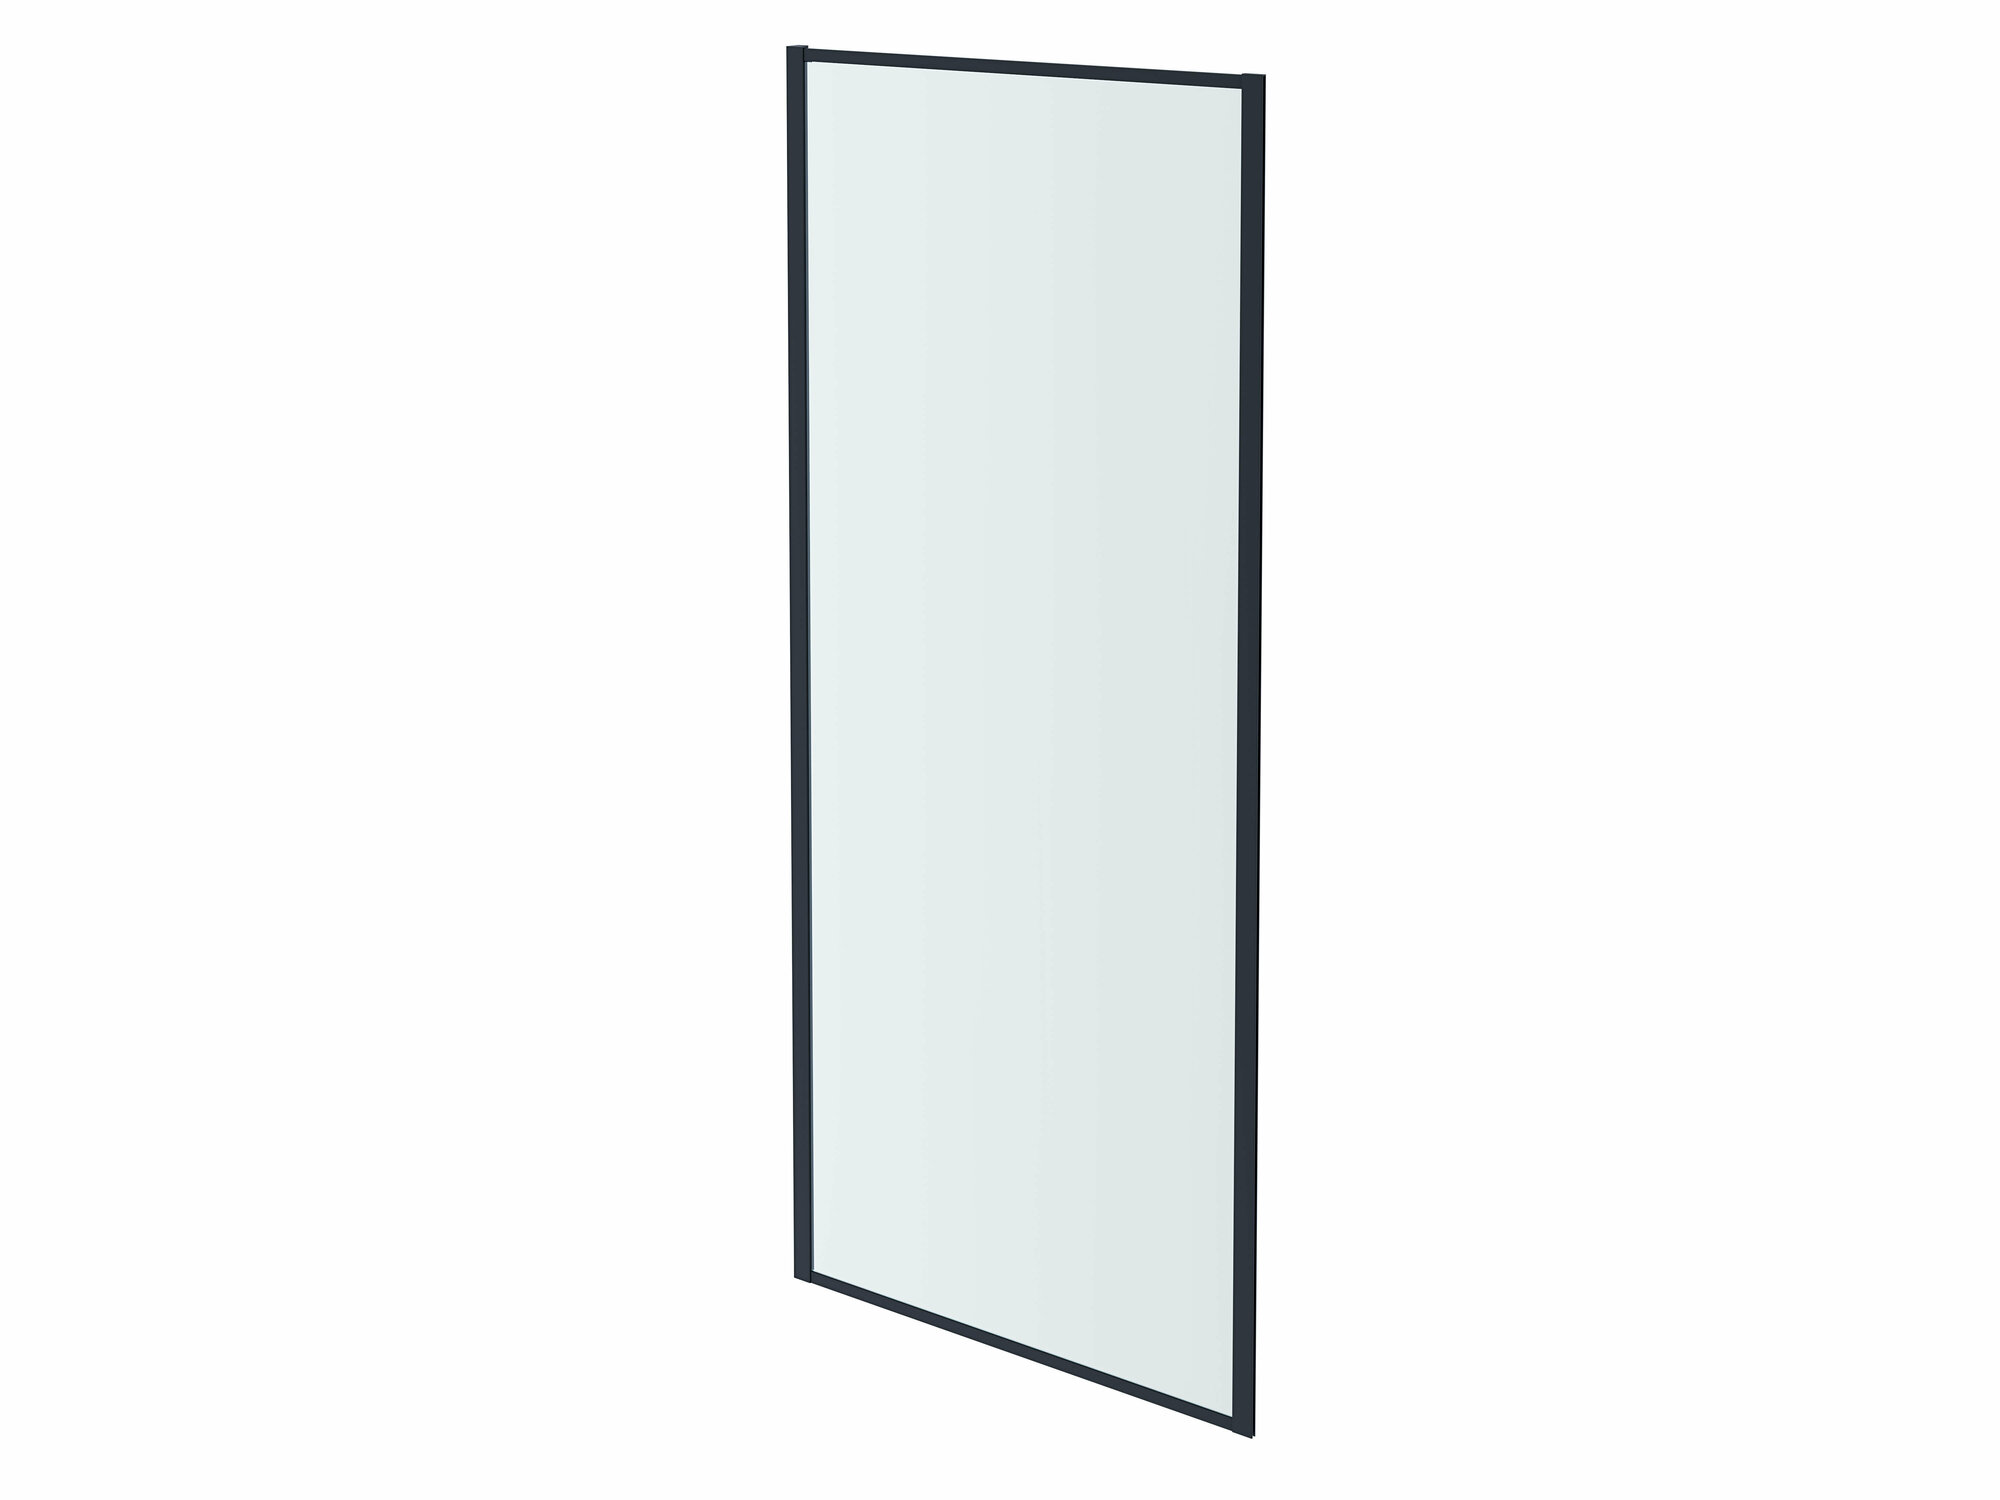 Неподвижная душевая стенка Aquatek AQ ARI WA 08020BL 800x2000, для комбинации с дверью, профиль черный, стекло прозрачное